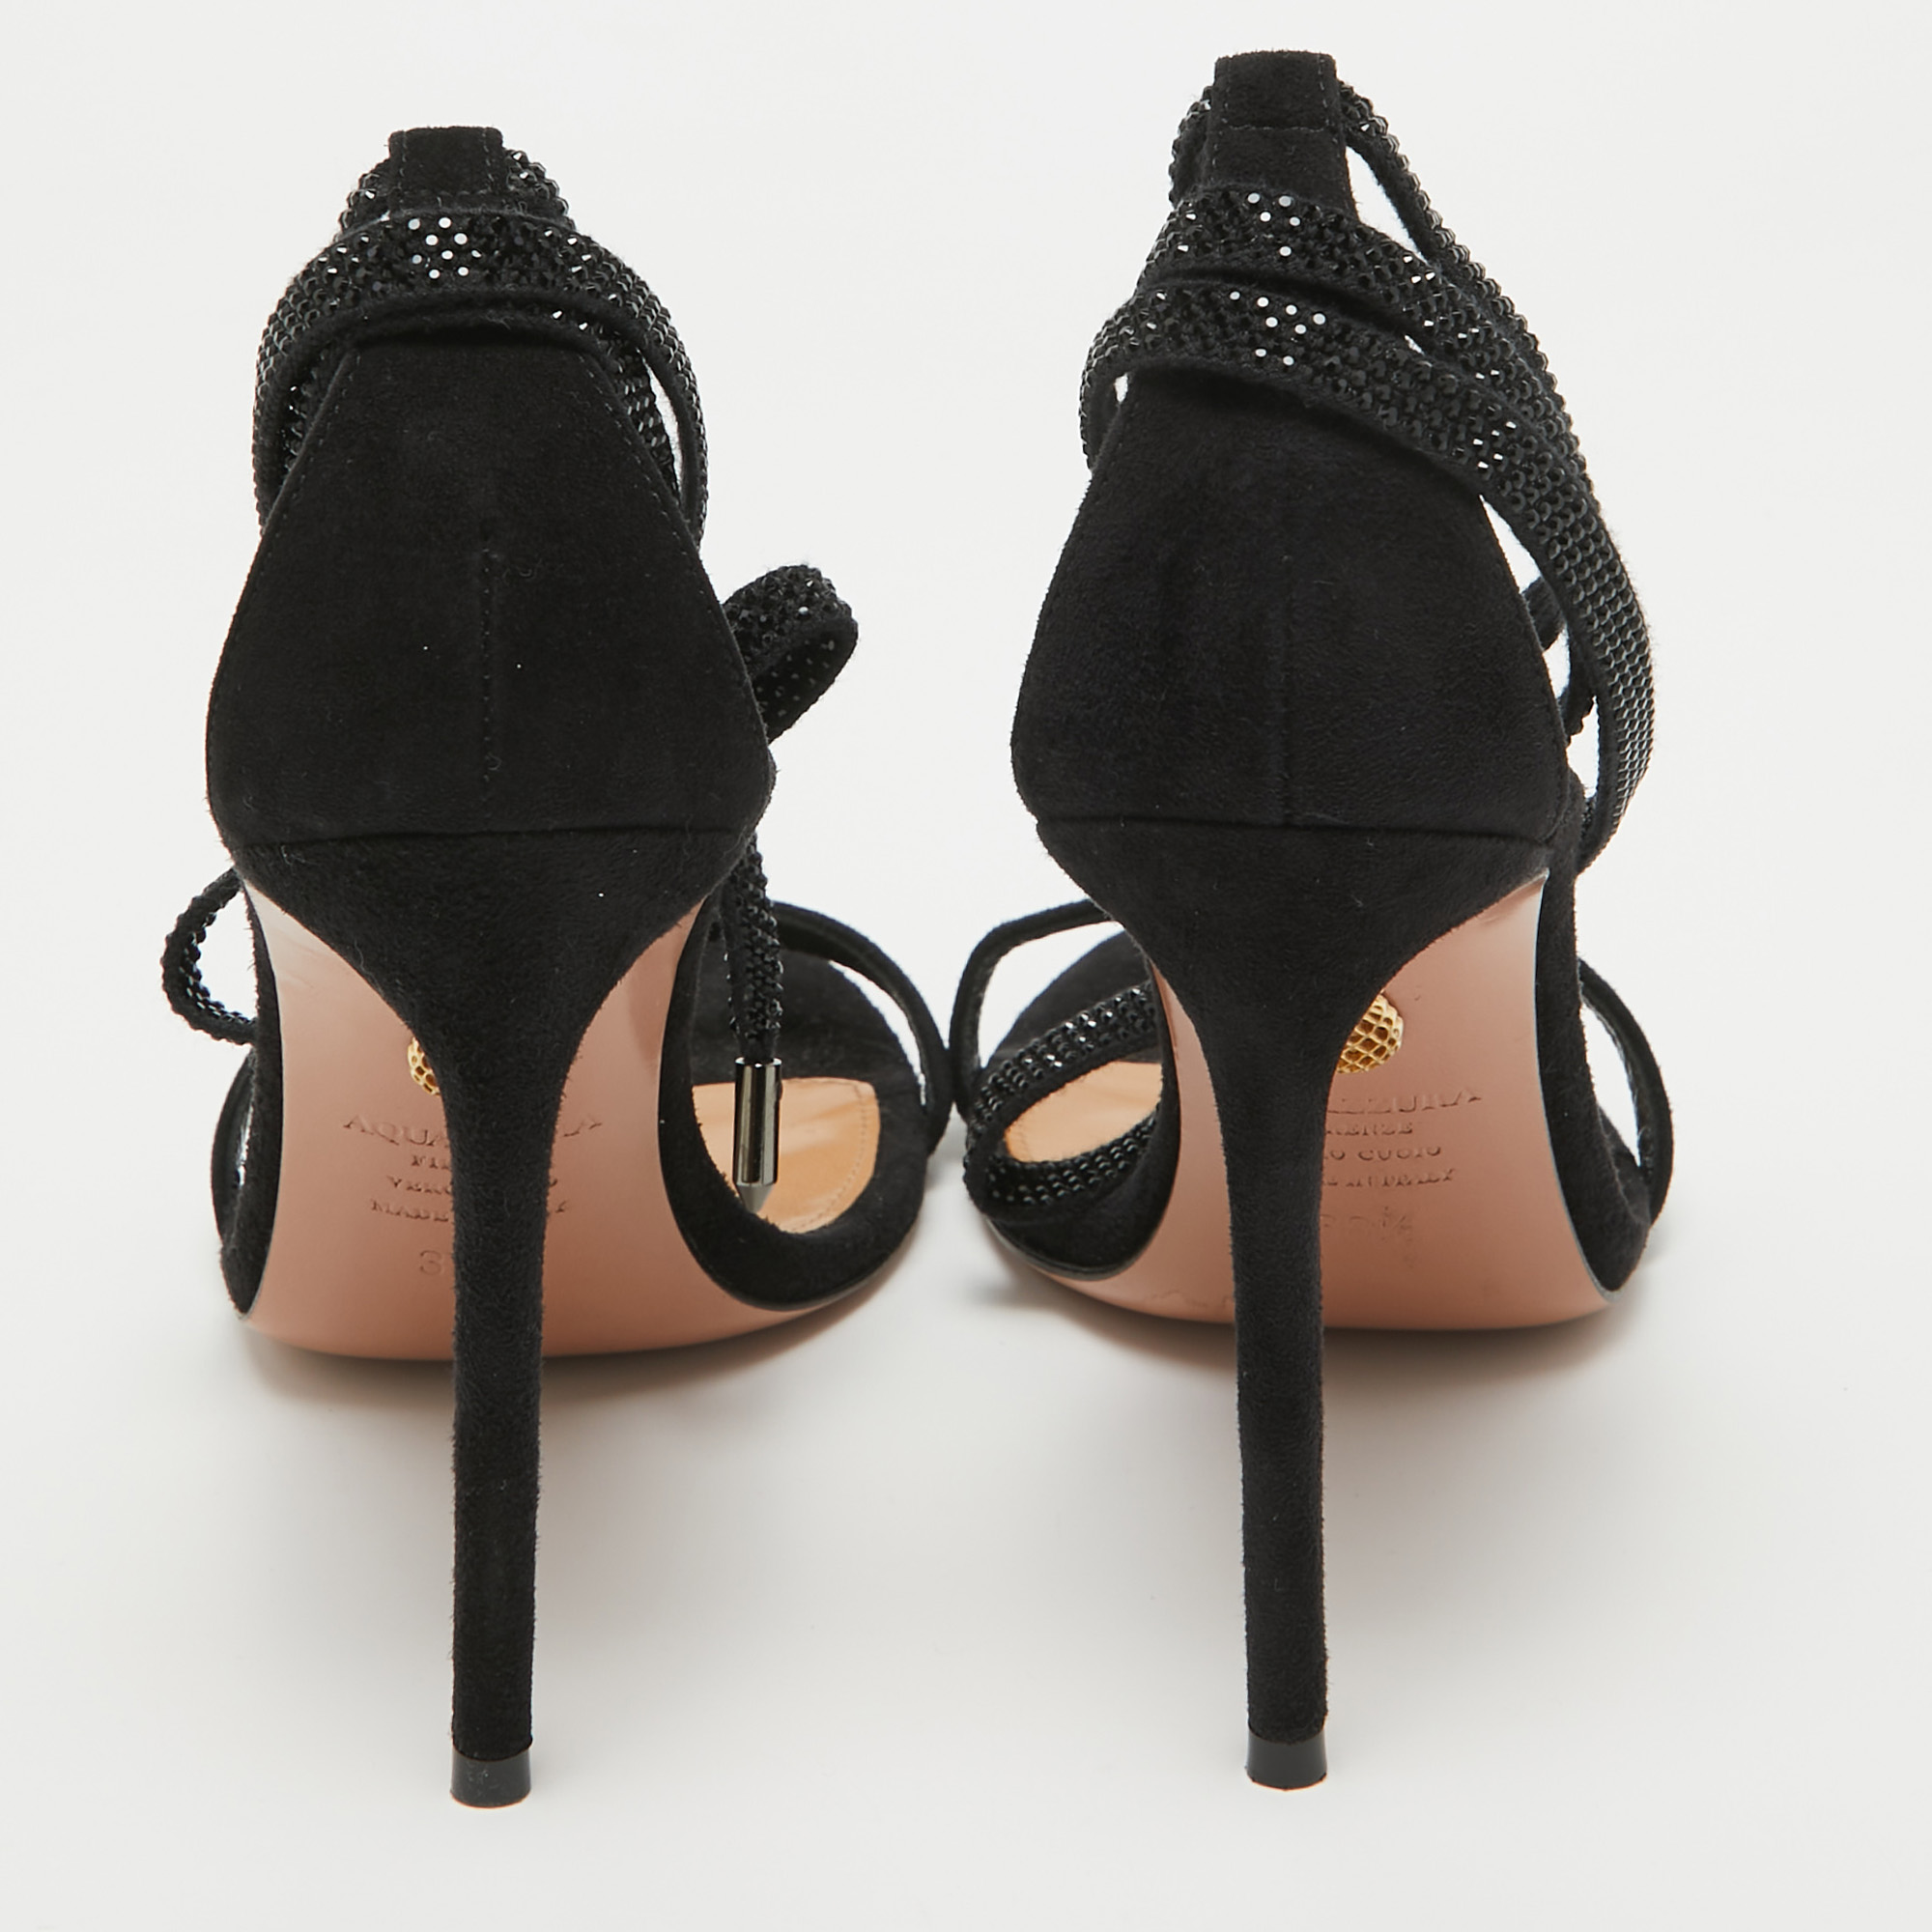 Aquazzura Black Suede Crystal Embellished Ankle Wrap Sandals Size 38.5